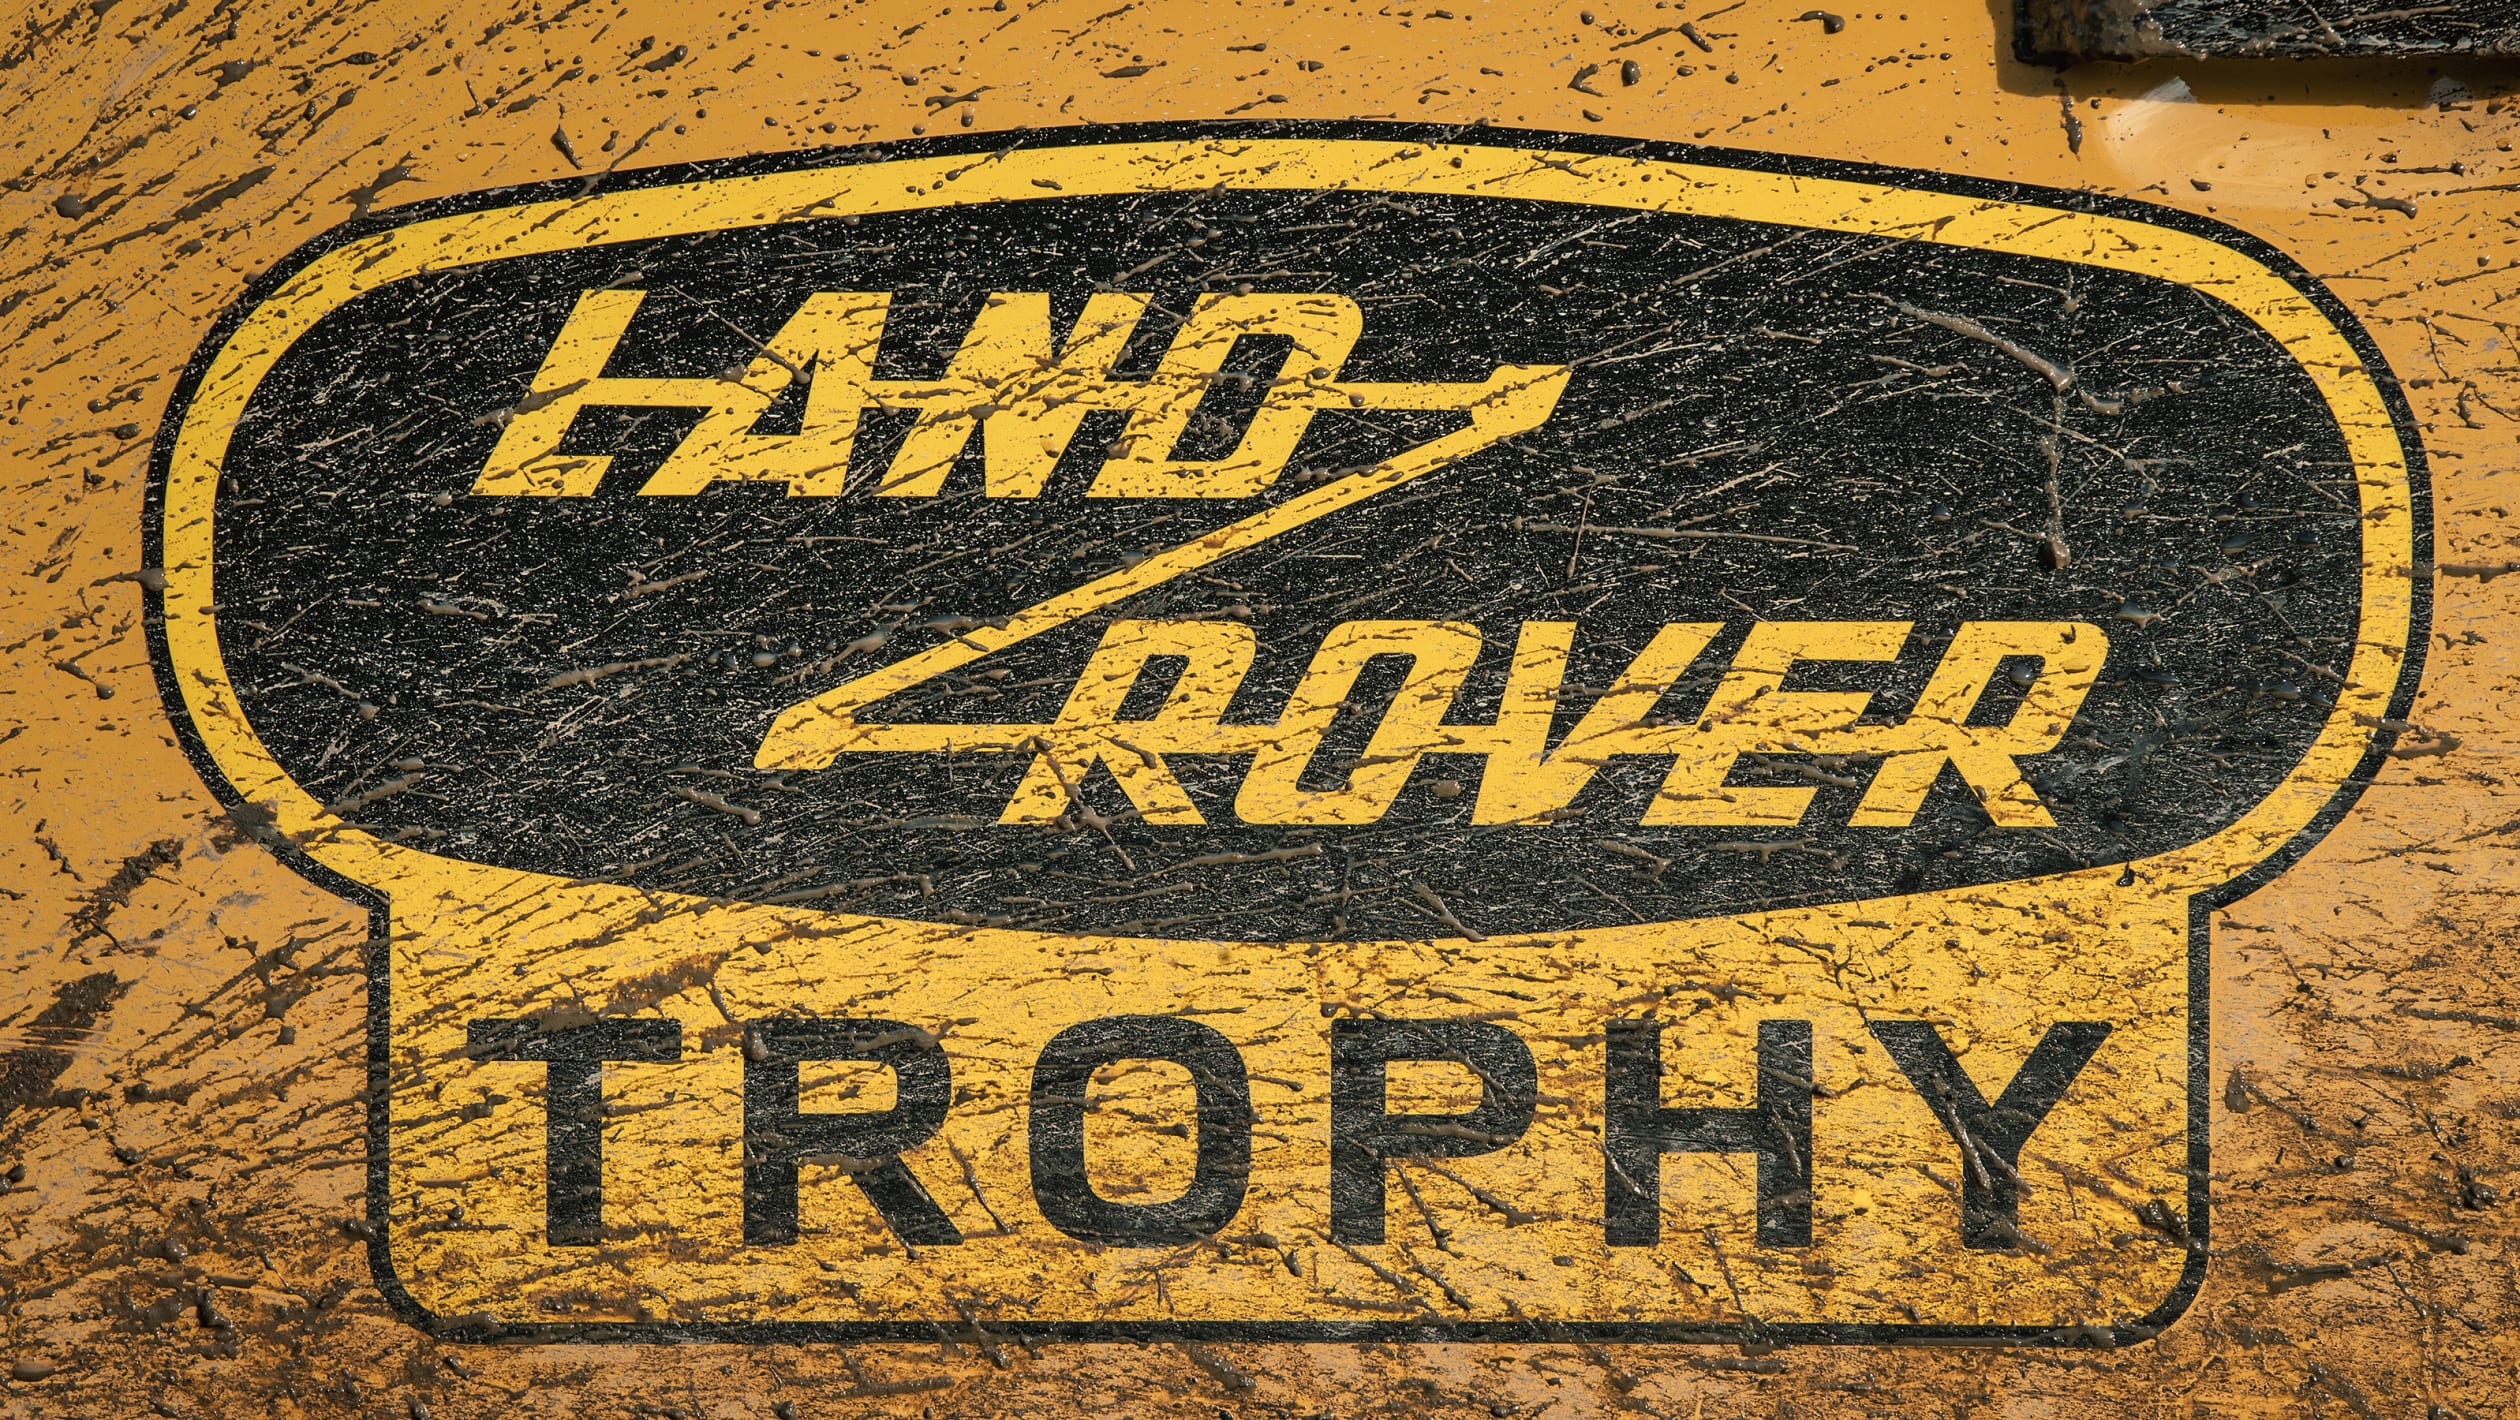 aria-label="Land Rover Defender Works V8 Trophy 8"